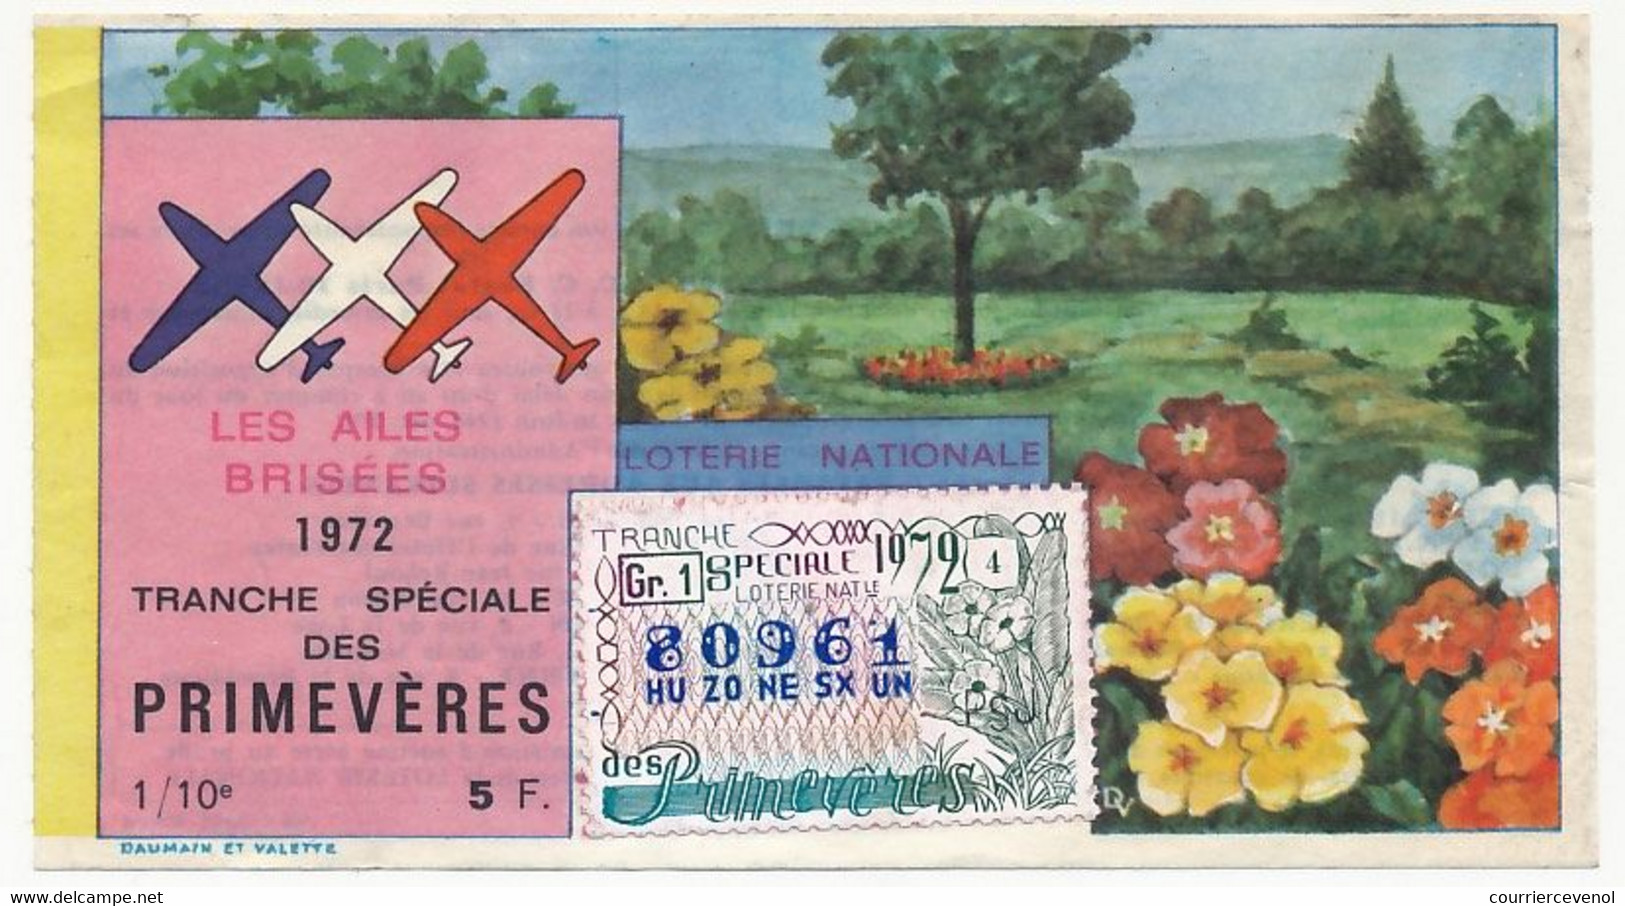 FRANCE - Loterie Nationale - 1/10ème - Les Ailes Brisées - Tranche Spéciale Des Primevères - 1972 - Biglietti Della Lotteria